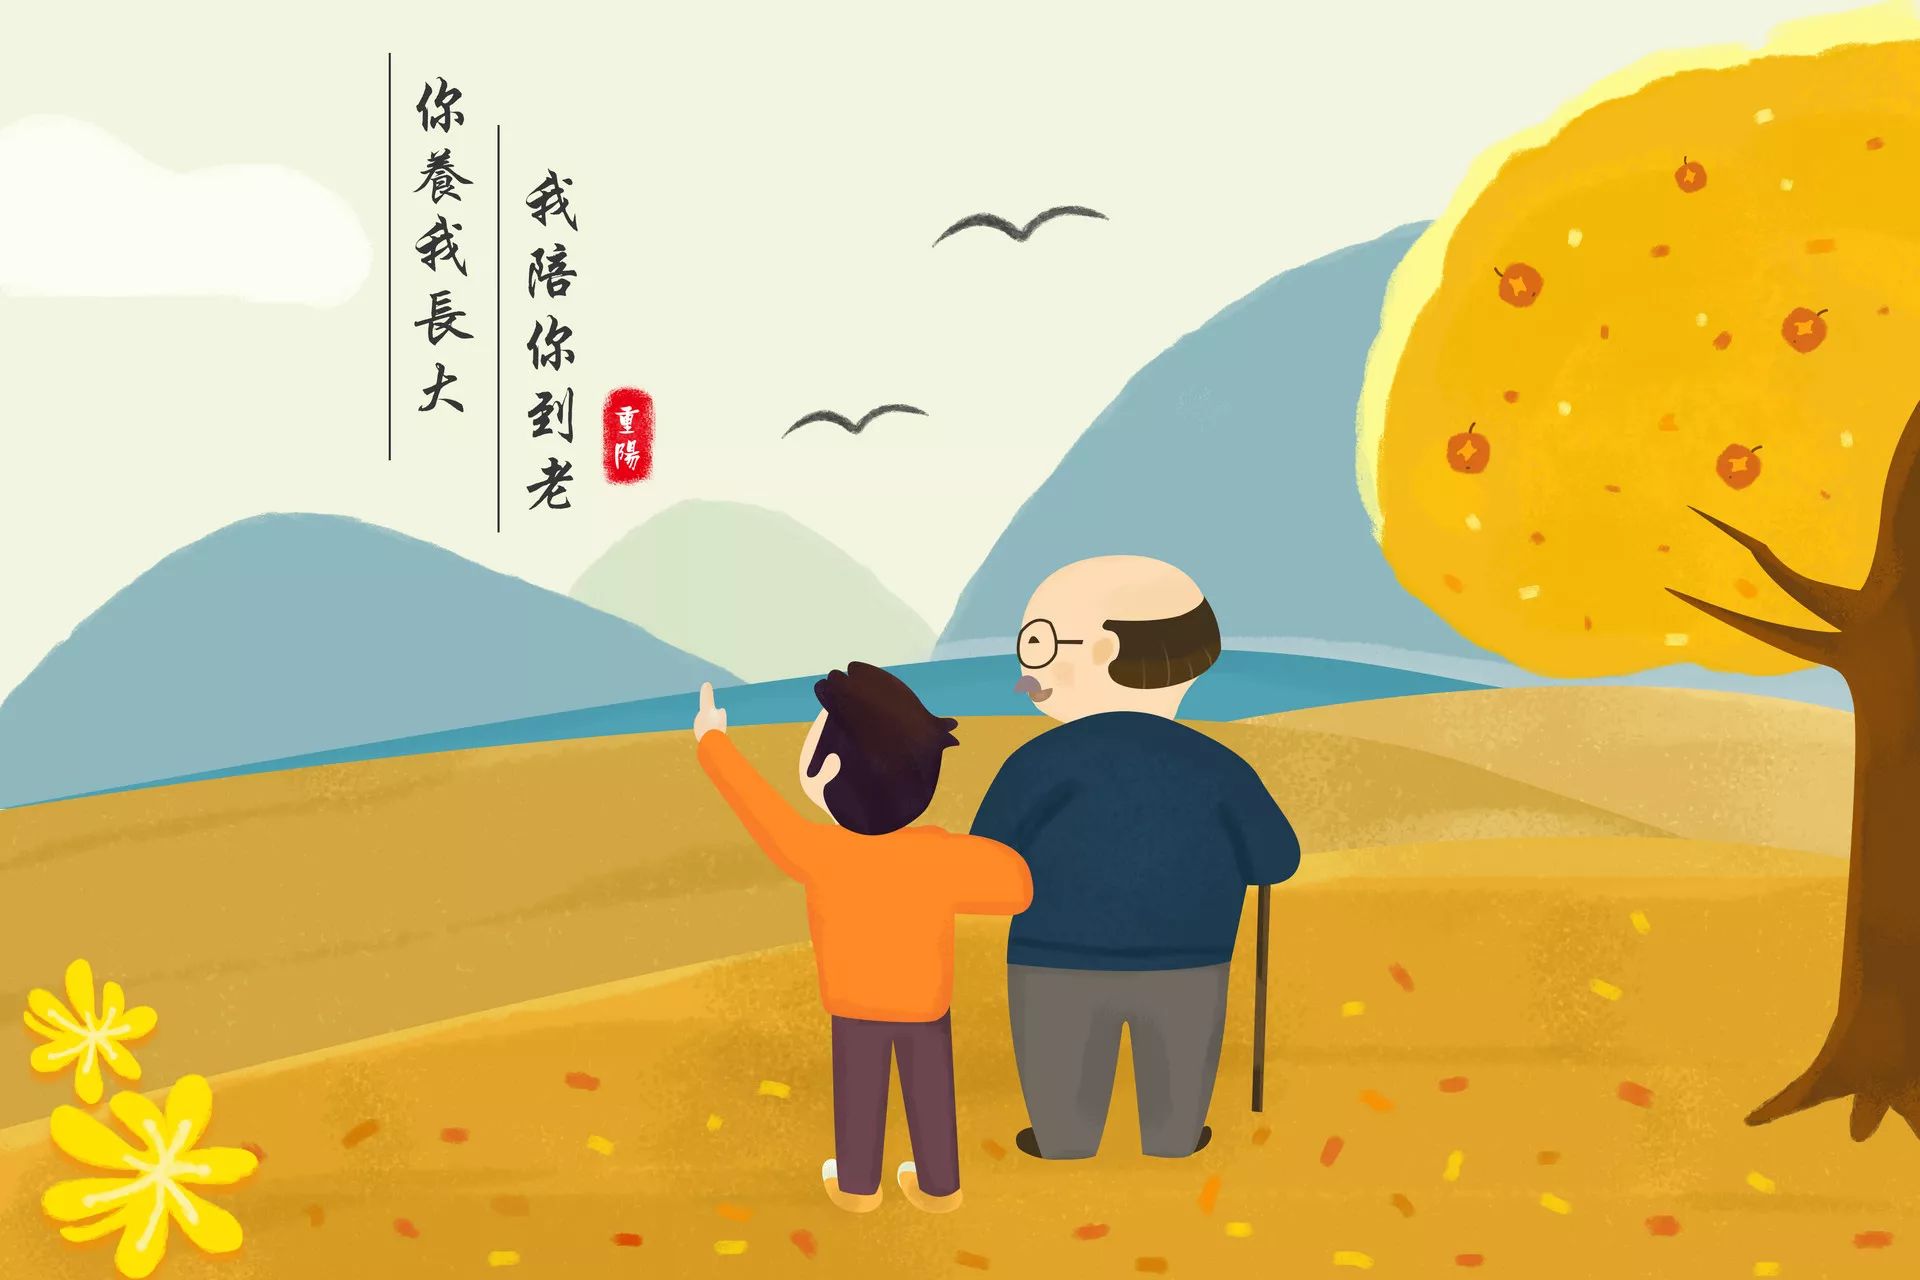 重阳节,又称重九节,晒秋节,"踏秋",为每年的农历九月初九日,中国传统